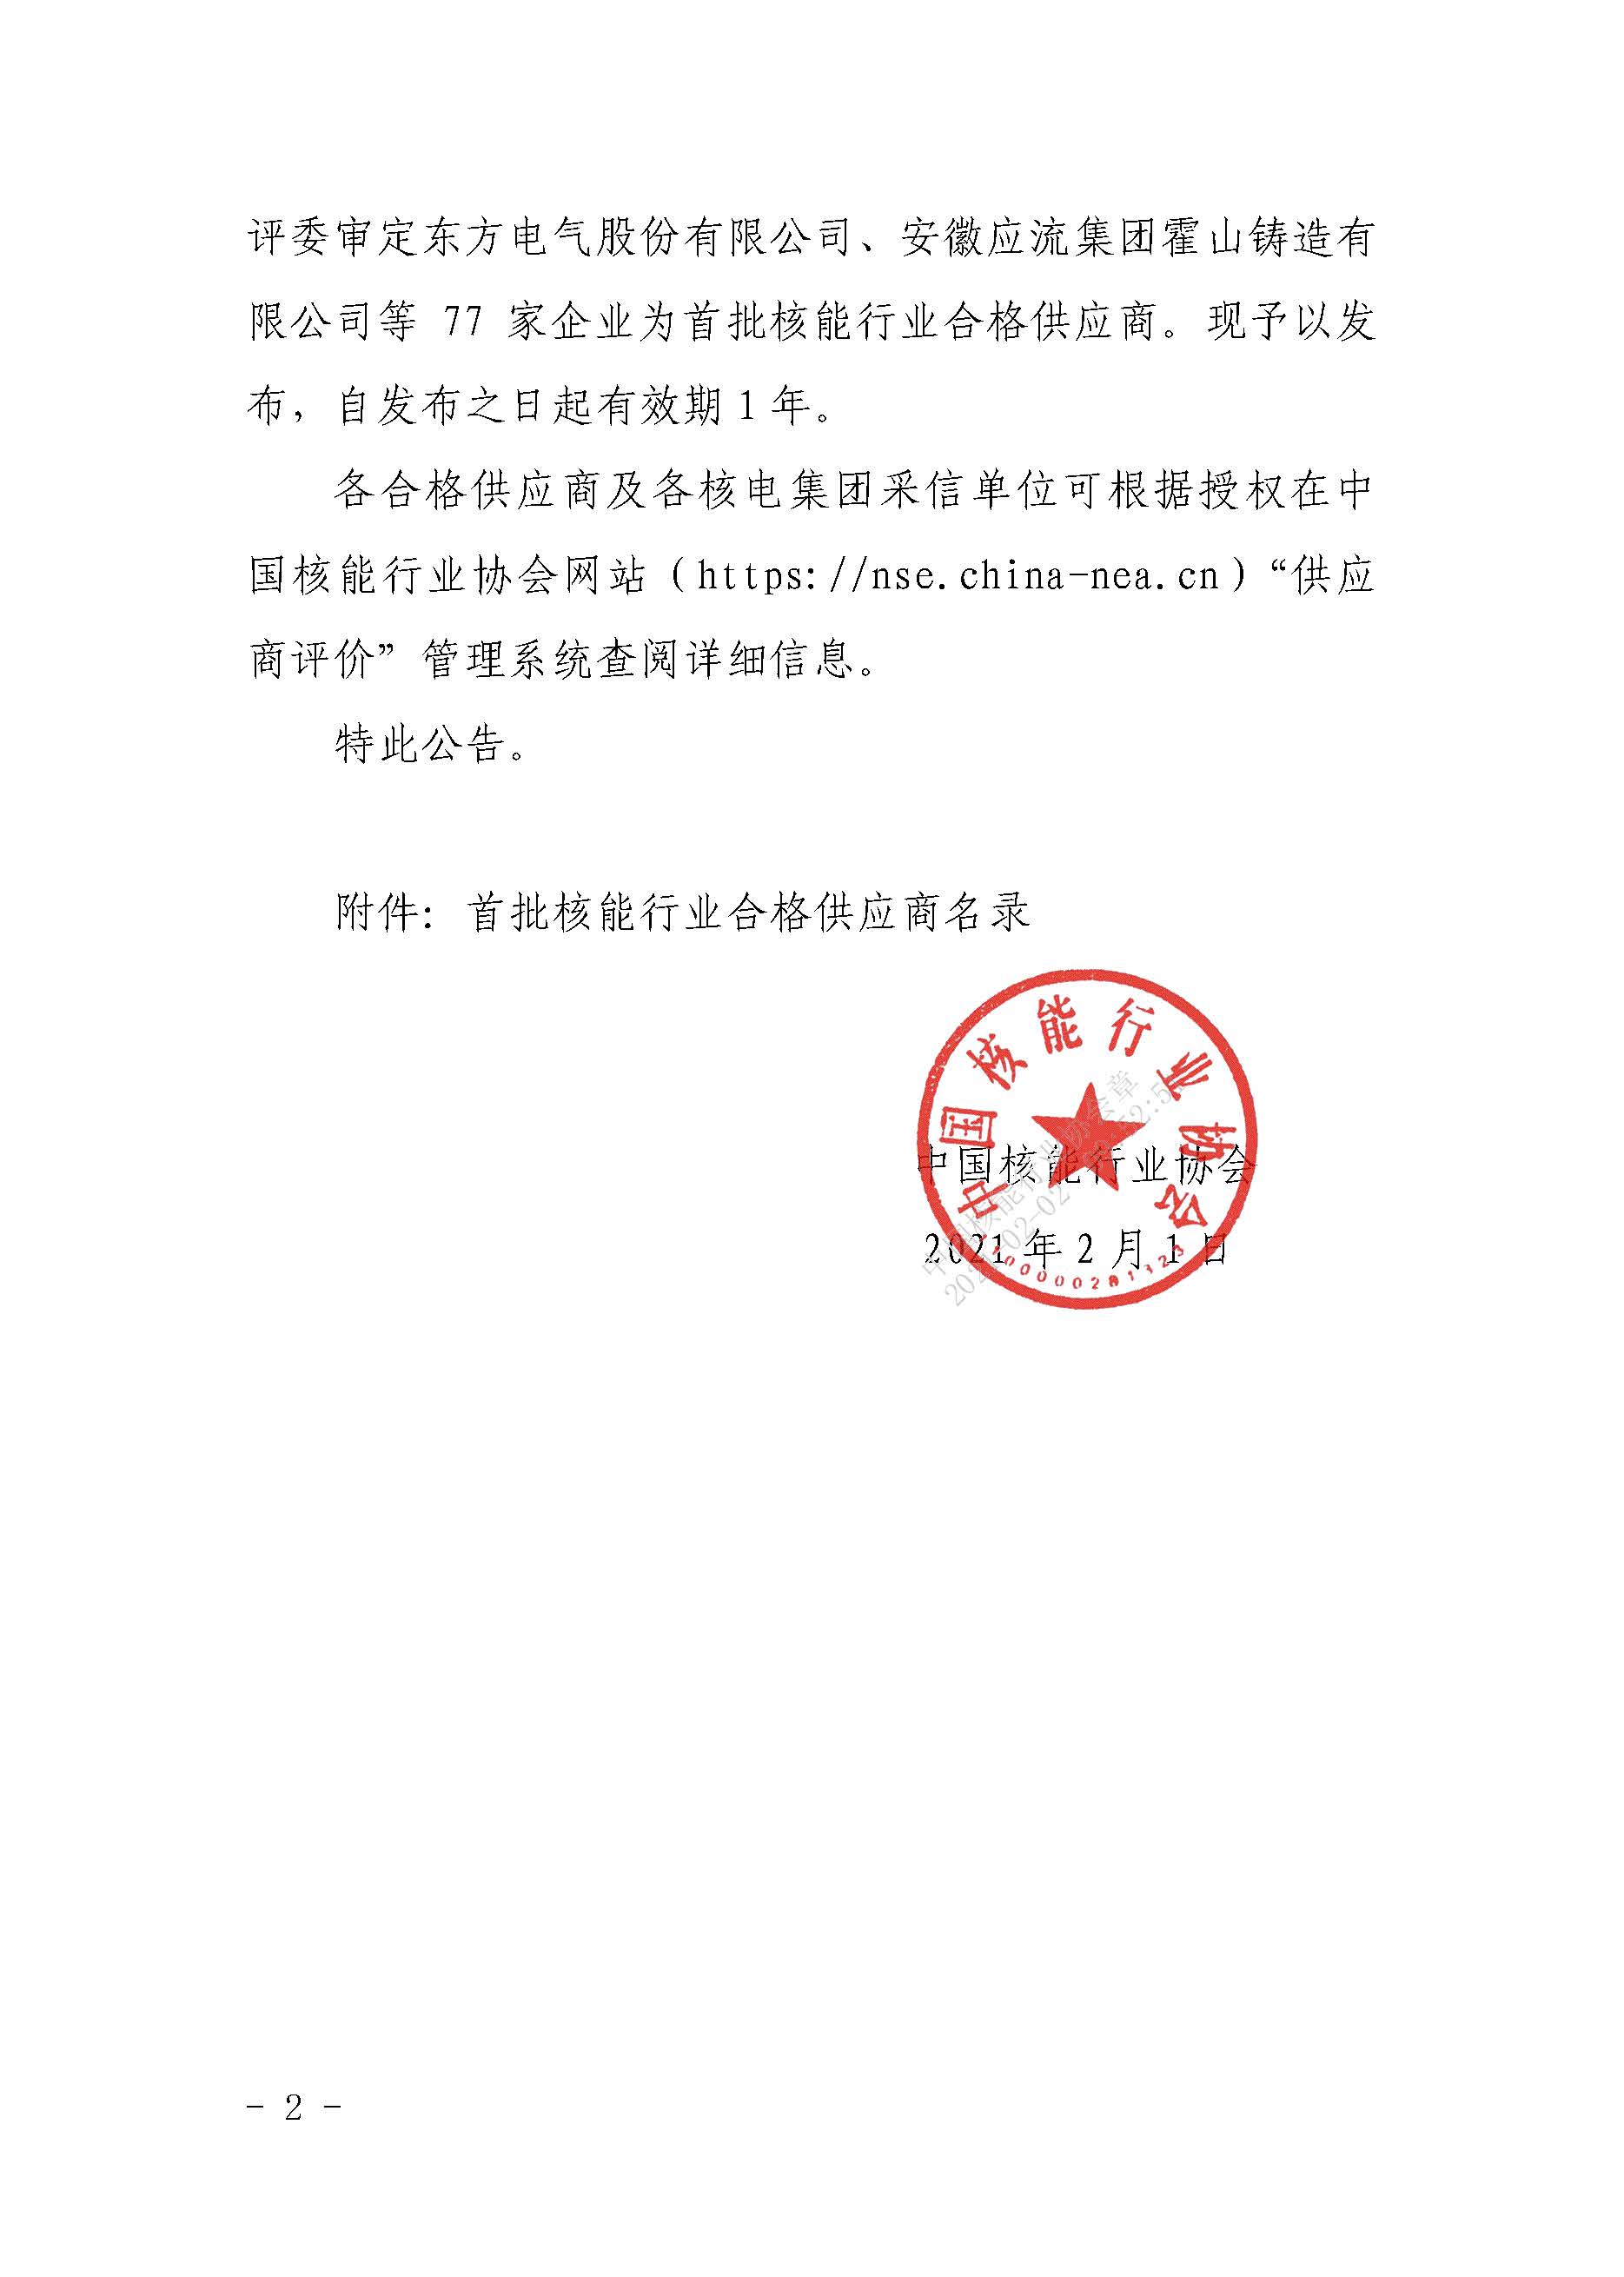 关于发布中国核能行业协会首批核能行业合格供应商名录的公告_页面_2.jpg